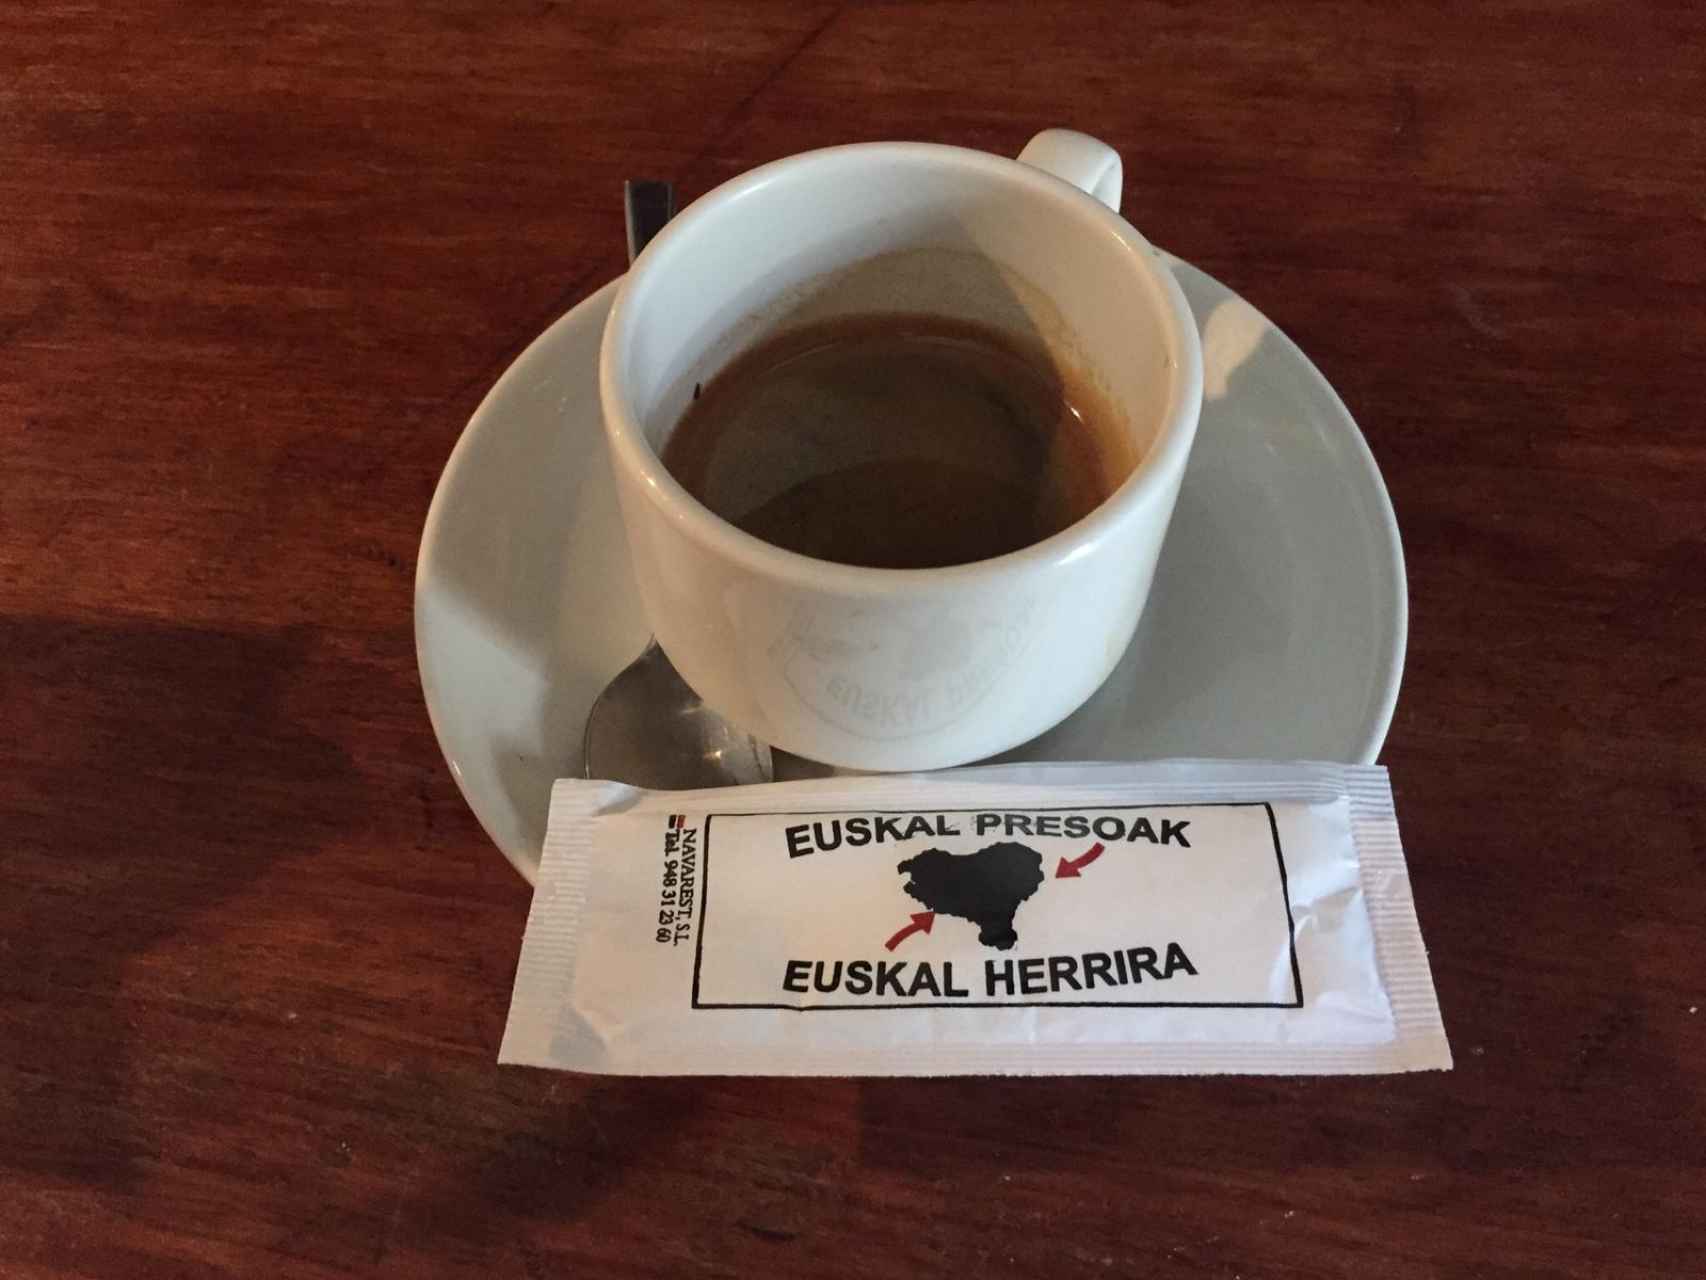 Hasta en los sobres de azúcar del café en los bares de Echarri hay mensajes pro-presos